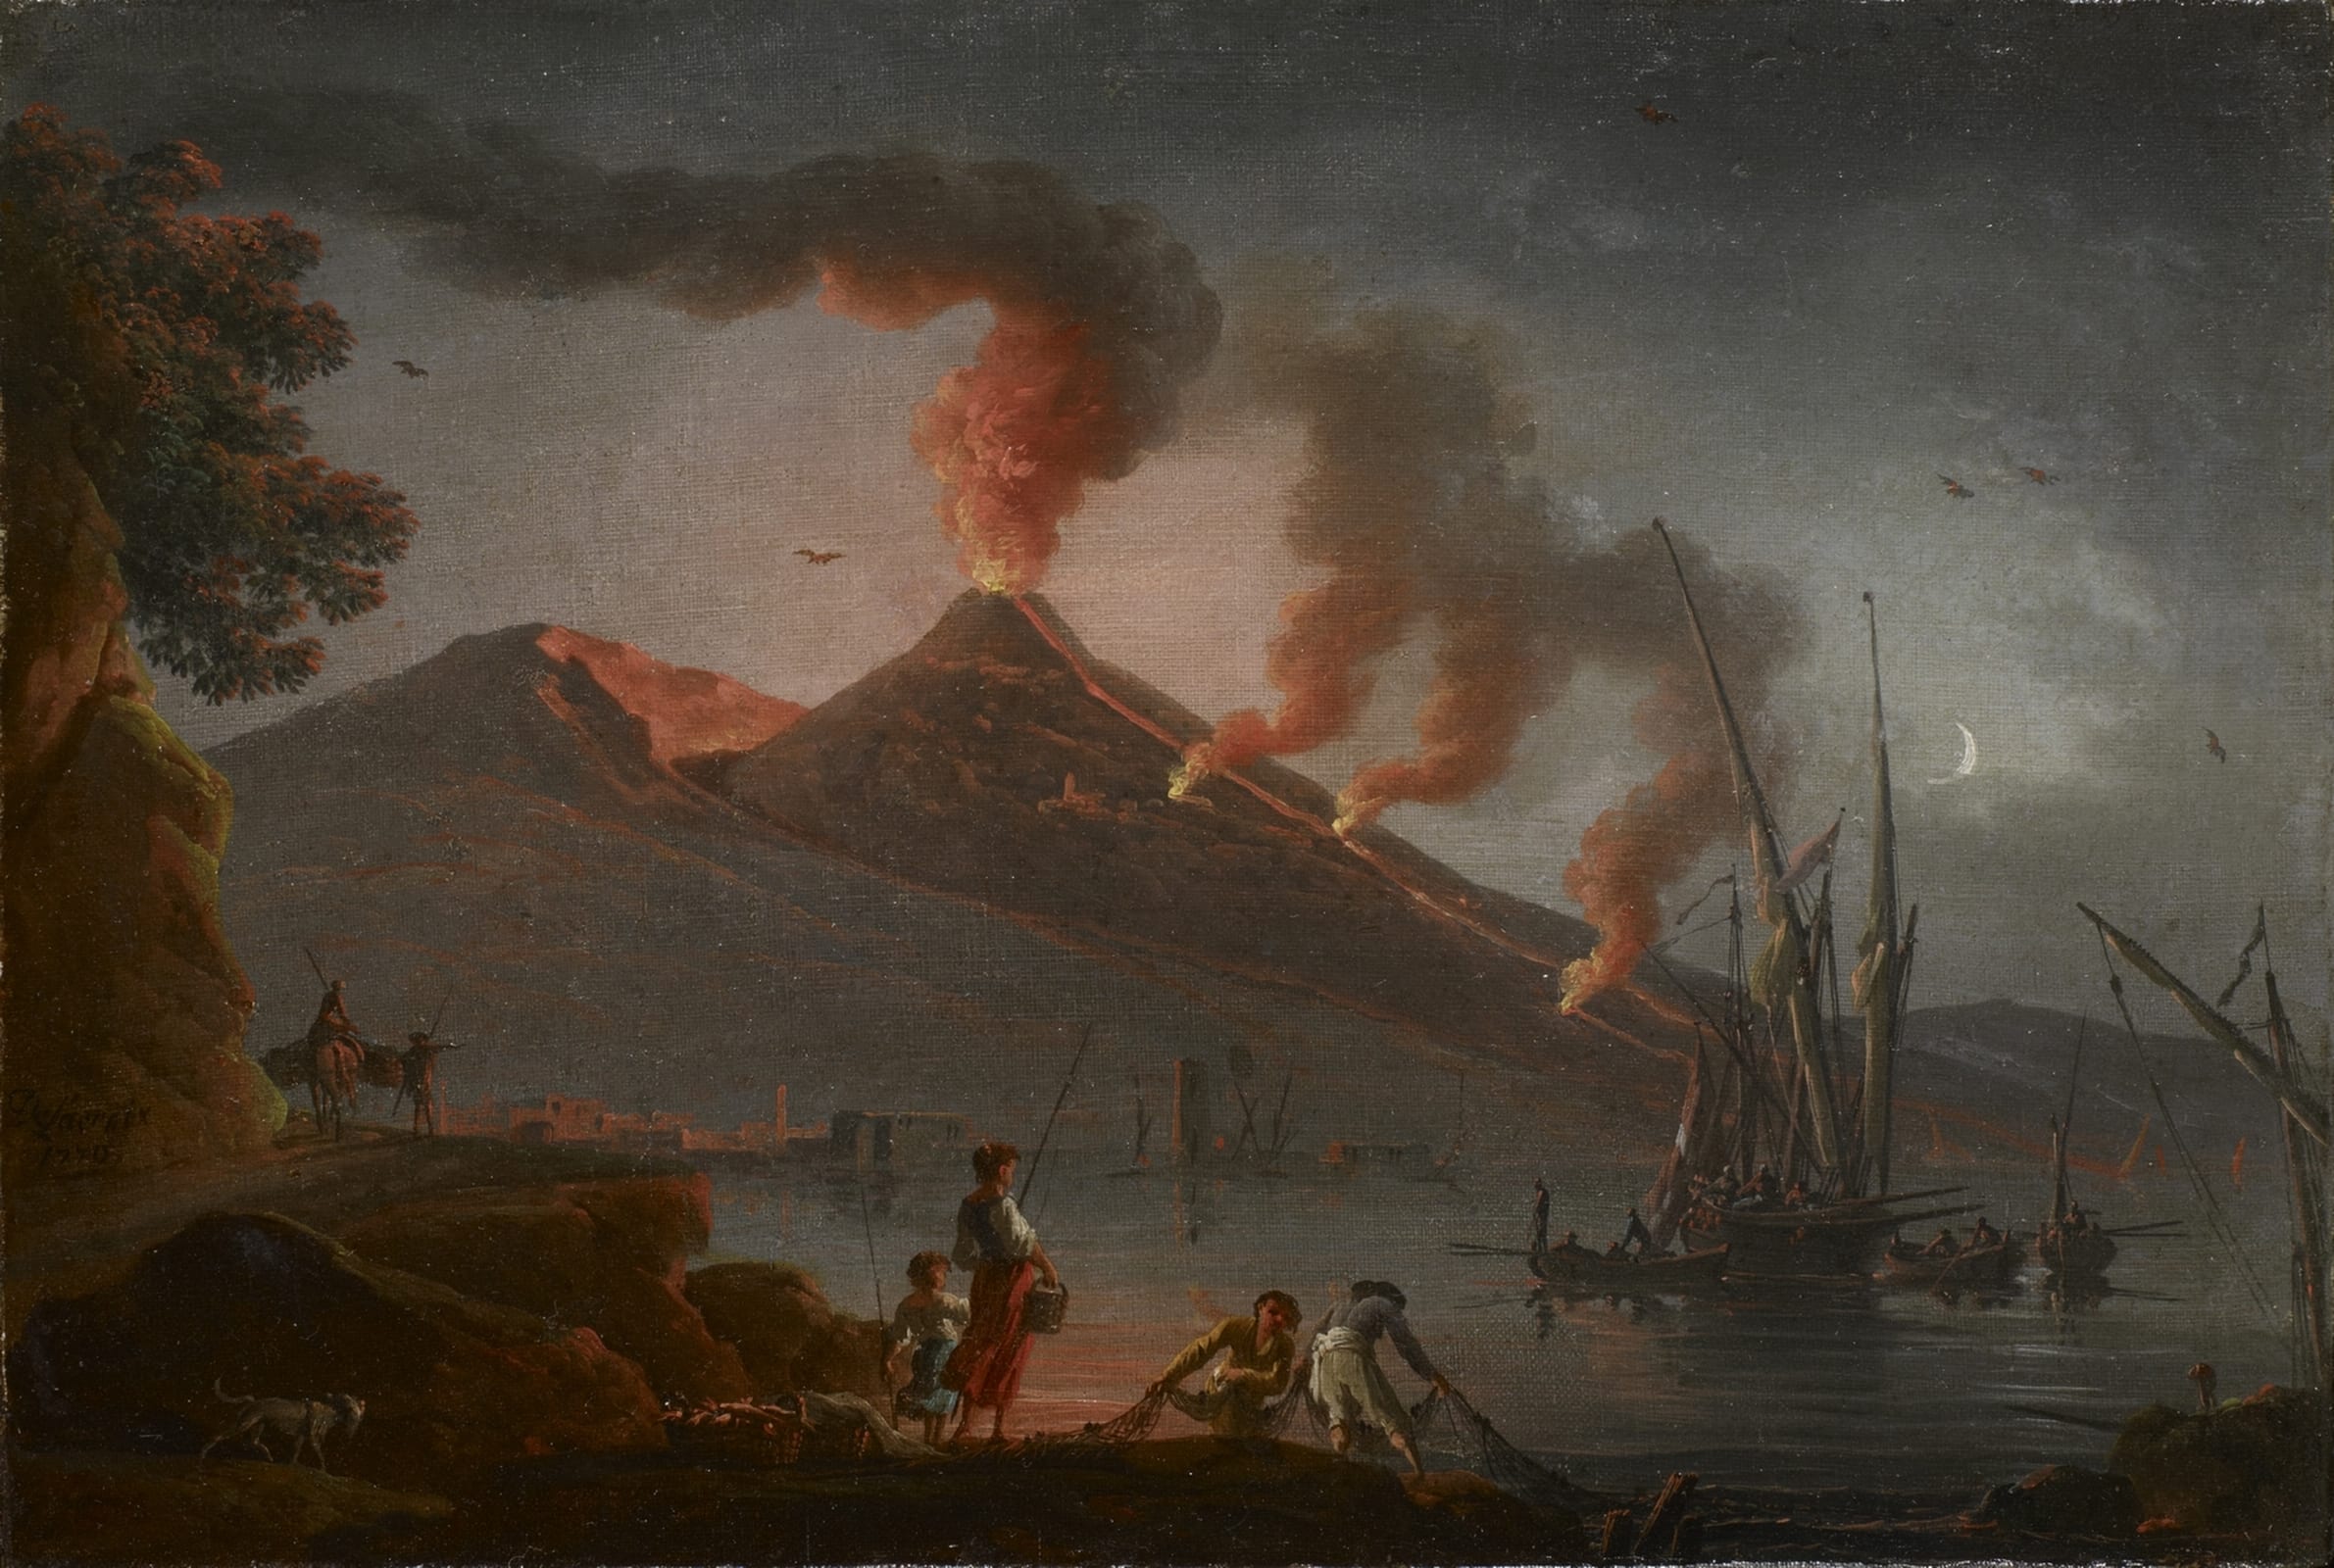 Извержение вулкана уничтожило город. Извержение Везувия Помпеи. Извержение вулкана Везувий гибель Помпеи. Помпеи извержение вулкана картина.